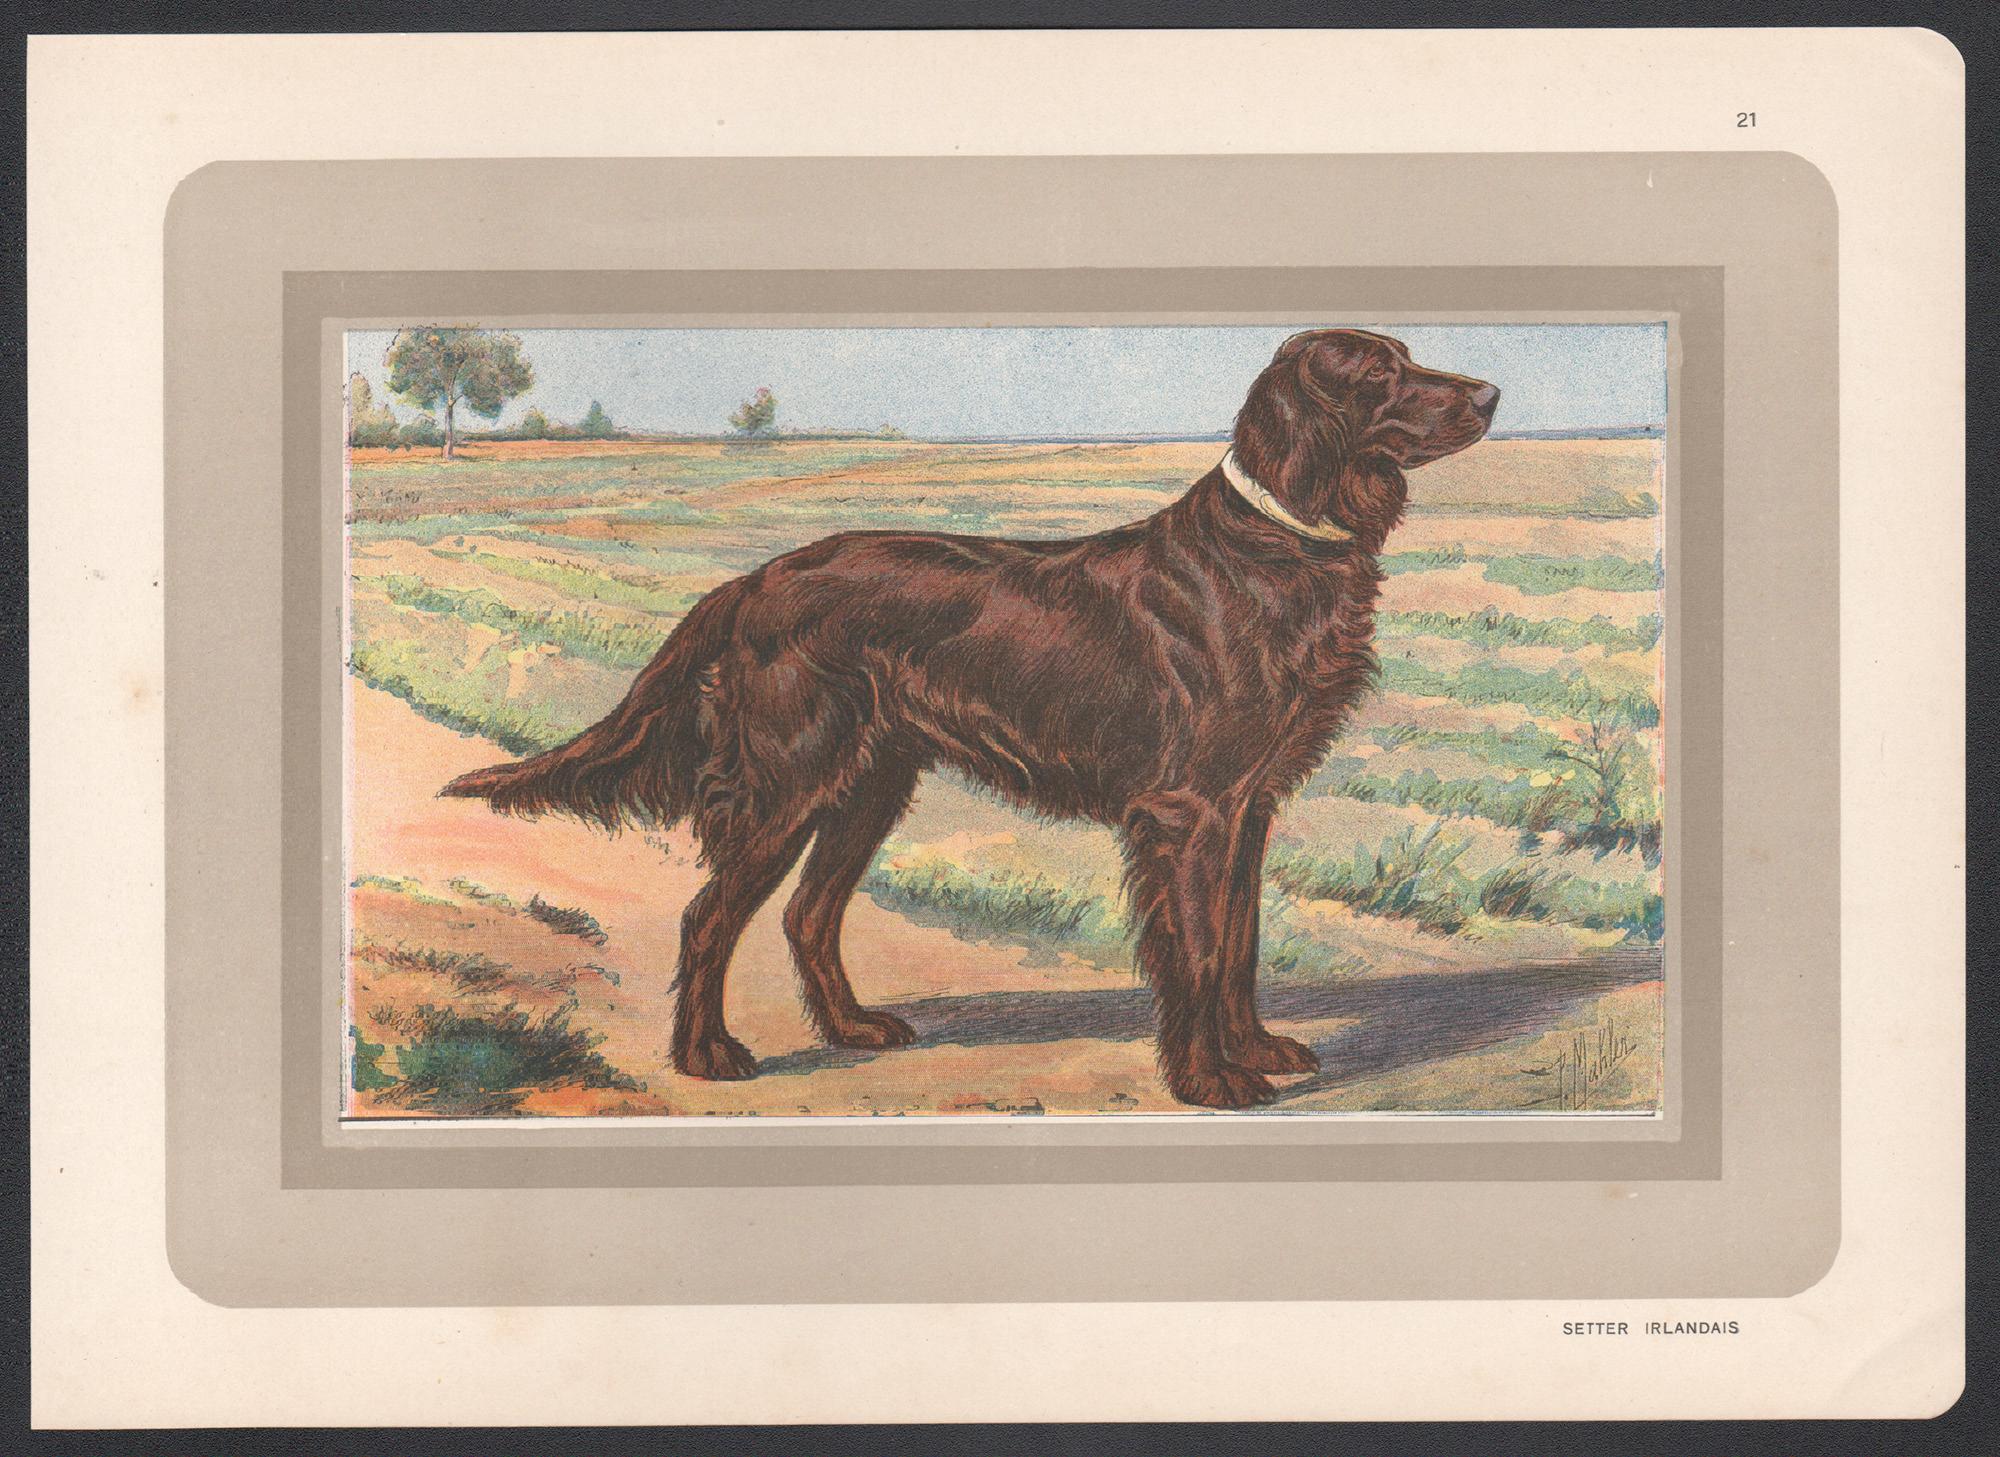 Irish Setter, Französischer Chromolithographiedruck mit Hund, 1930er-Jahre – Print von P. Mahler